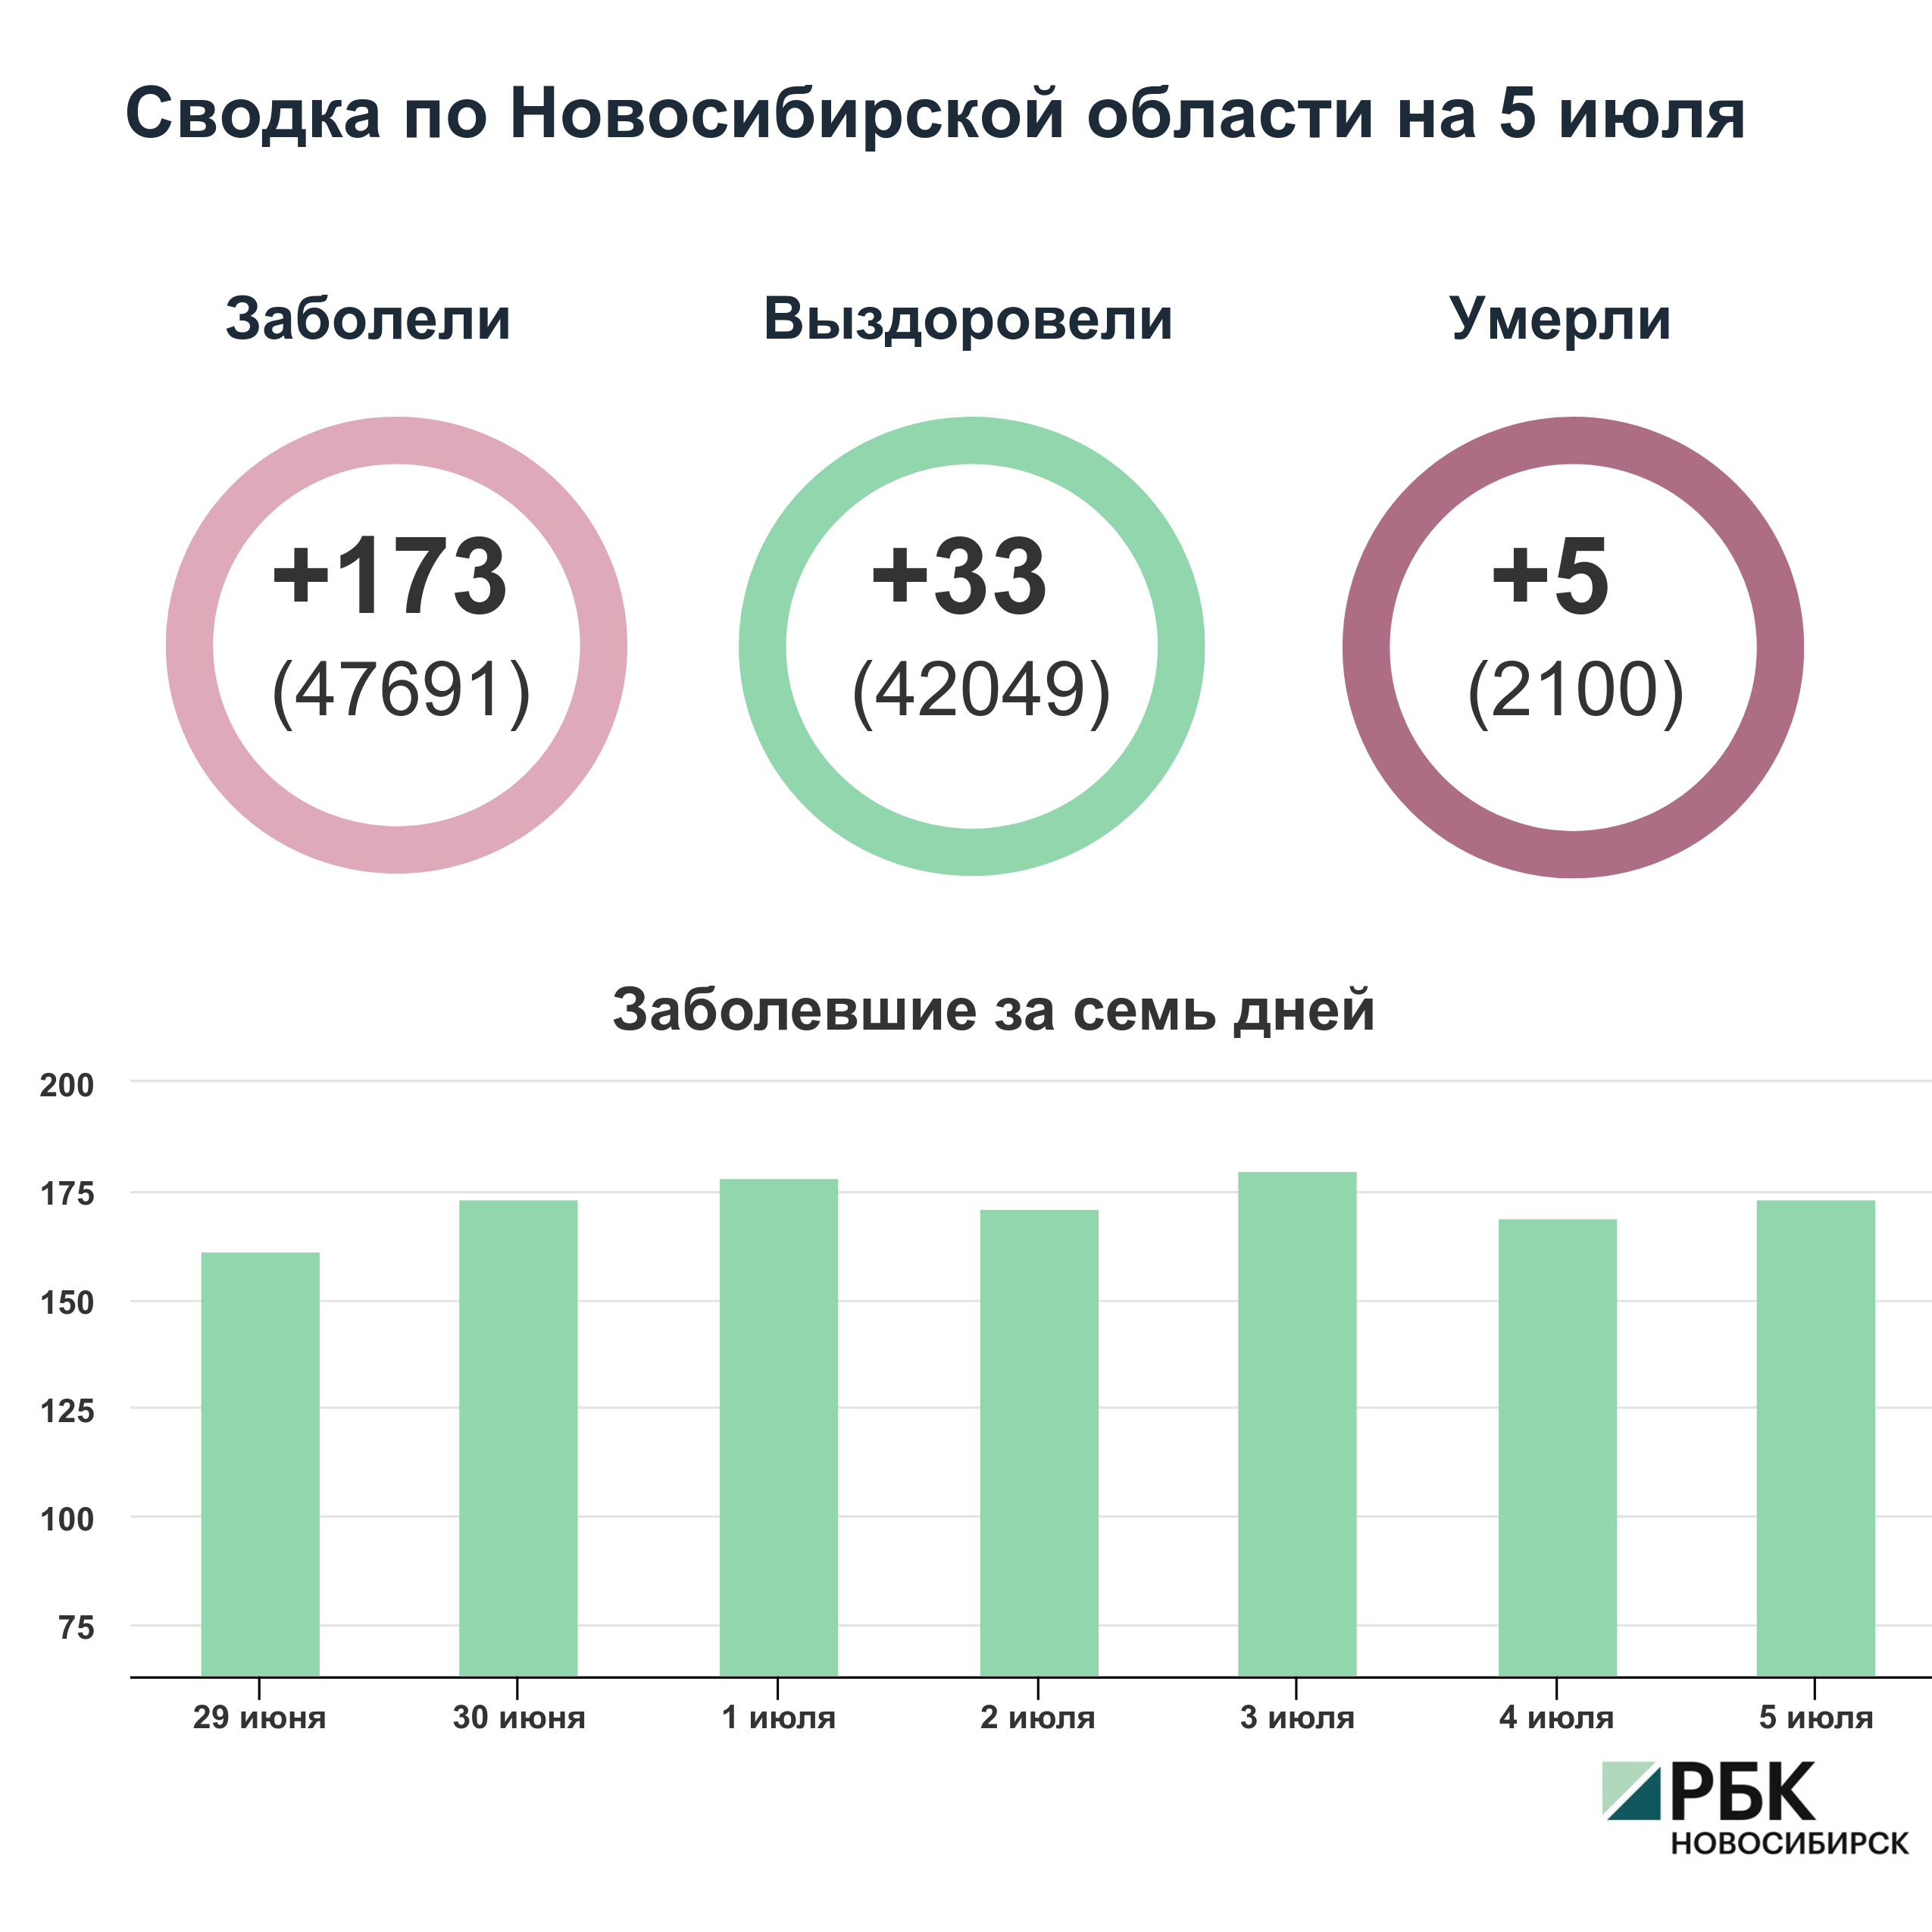 Коронавирус в Новосибирске: сводка на 5 июля